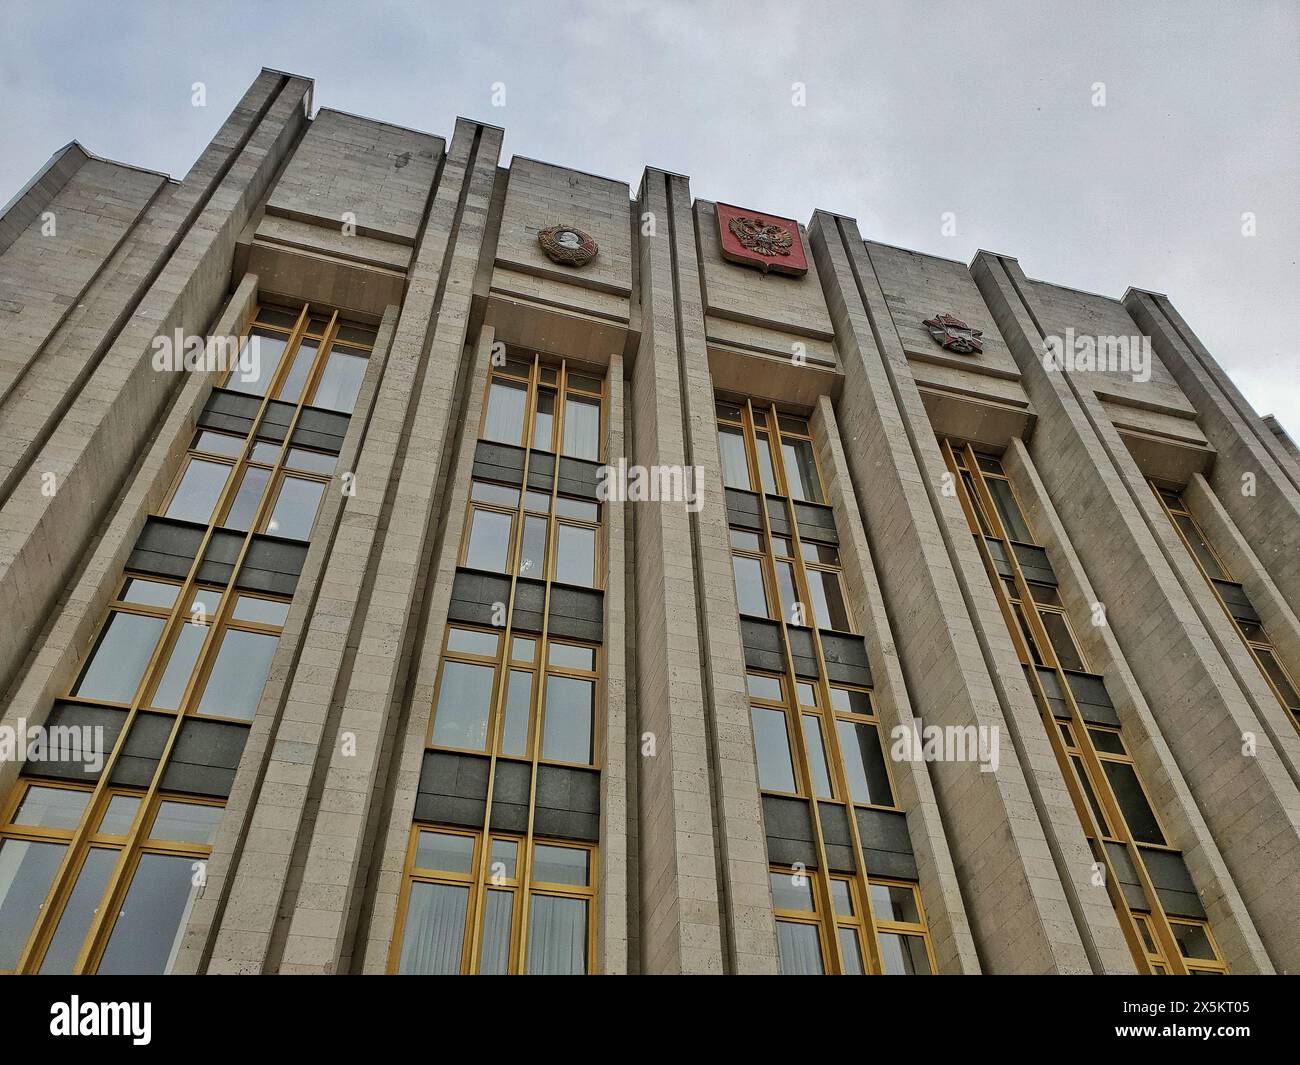 Le gouvernement de Leningradskaya oblast bâtiment, conçu dans le style moderniste socialiste, la façade d'un angle bas. Banque D'Images